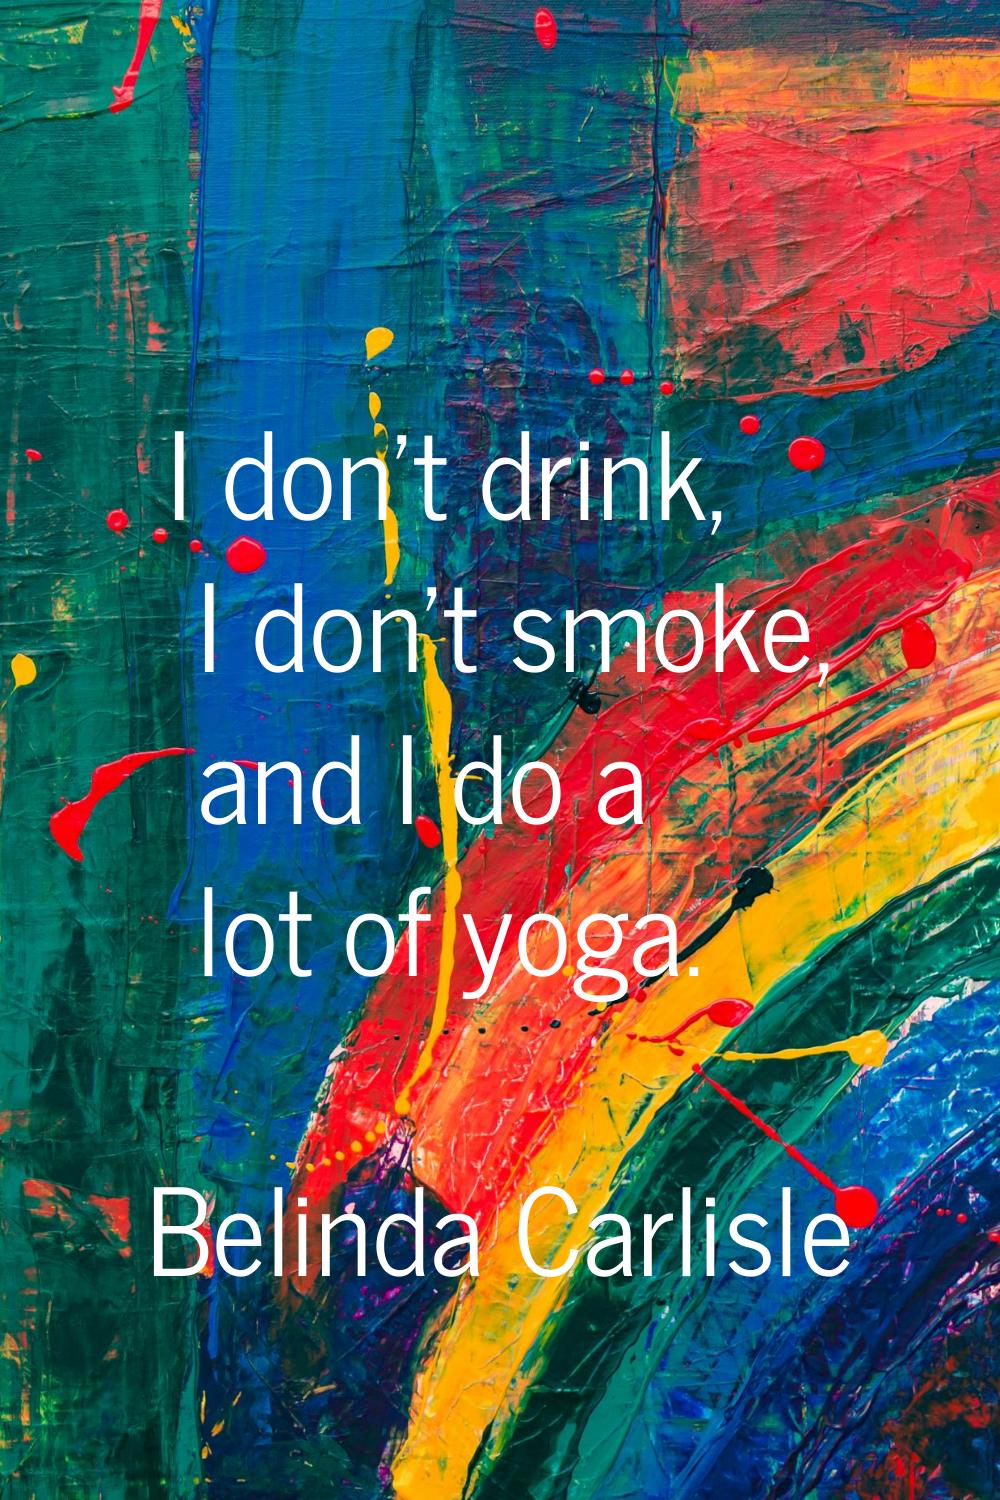 I don't drink, I don't smoke, and I do a lot of yoga.